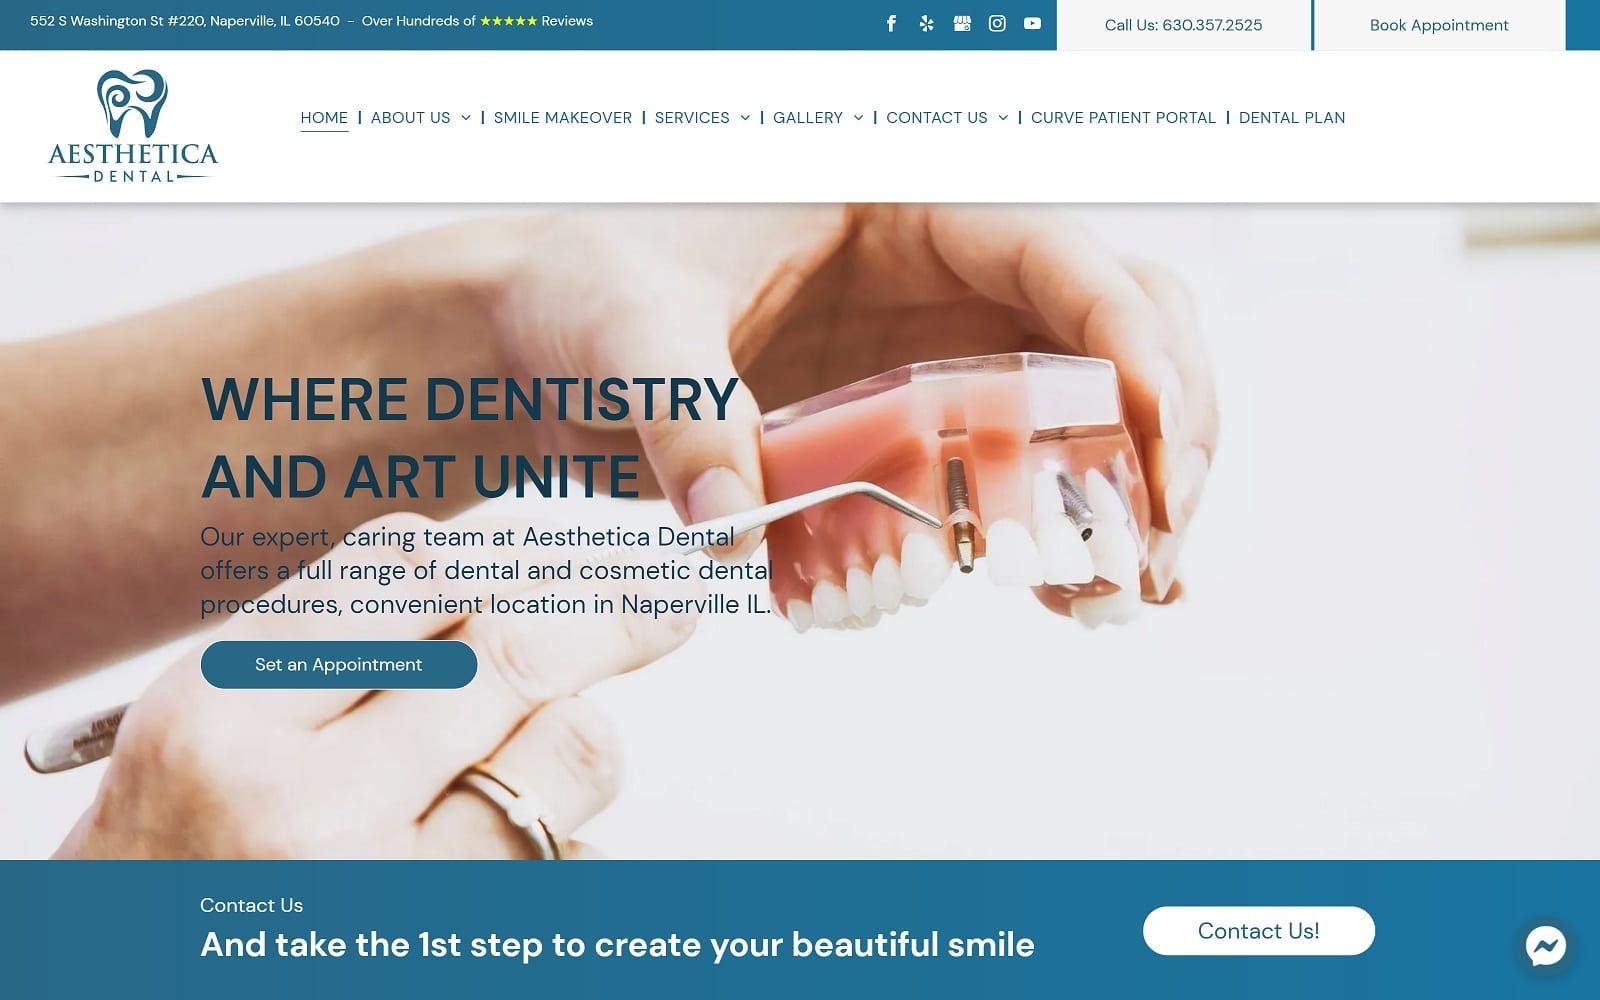 The screenshot of aesthetica dental aestheticadentistry. Com website